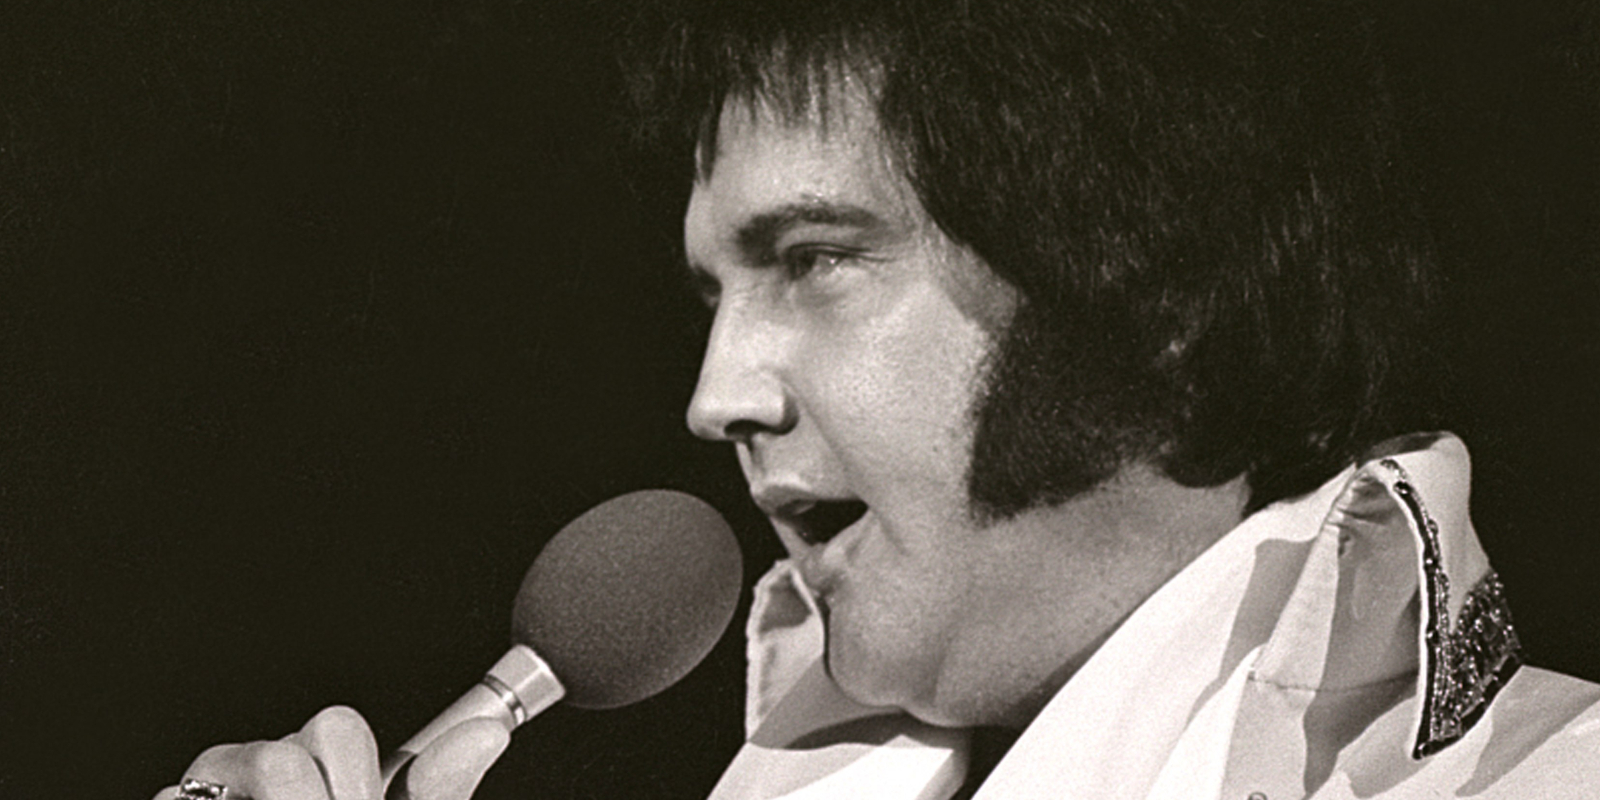 How Did Elvis Presley Spend The Last Week of His Life?